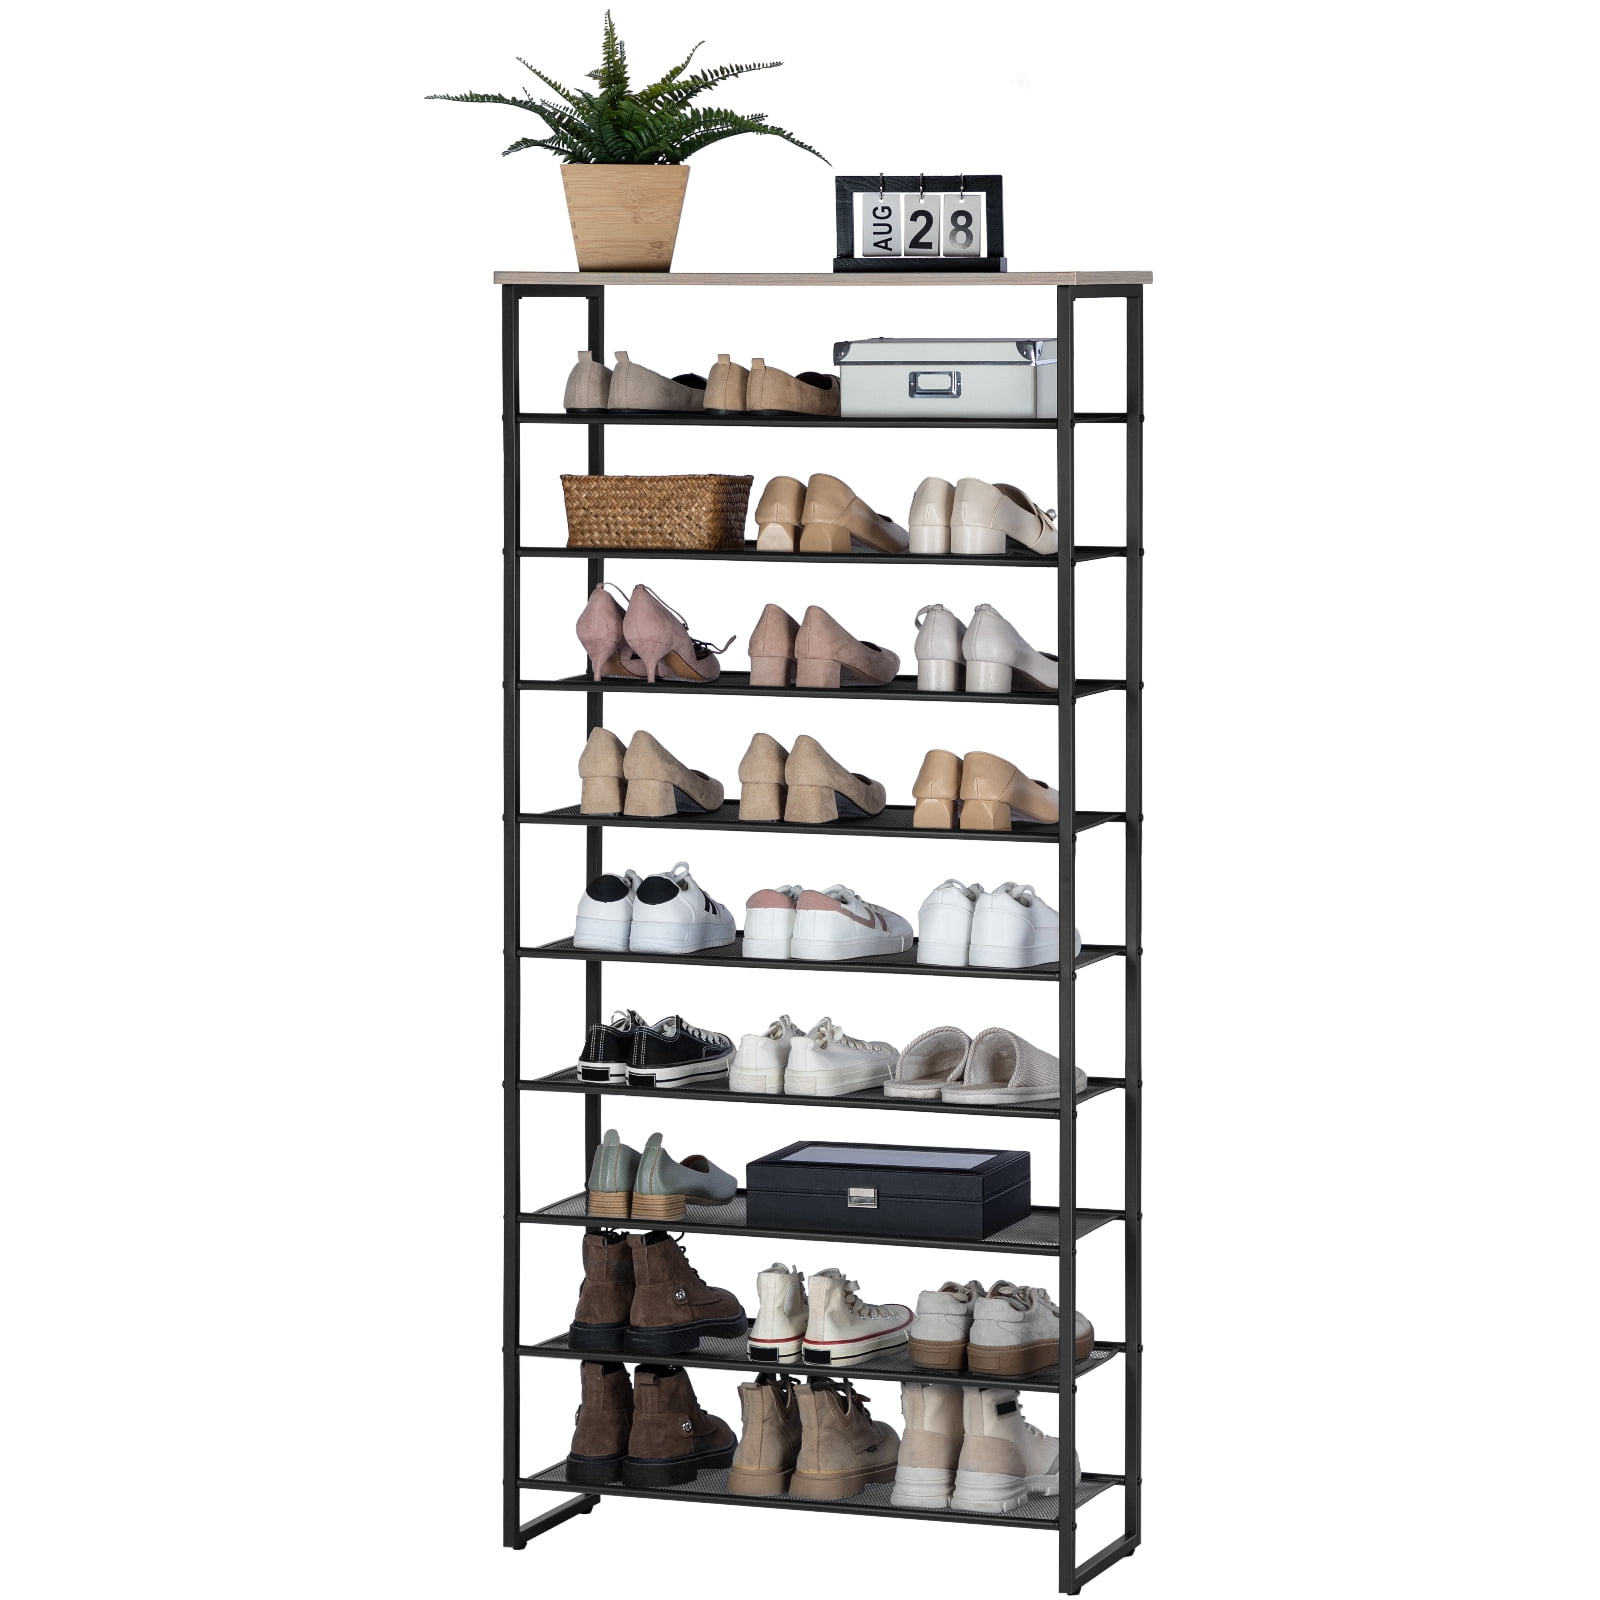 HOOBRO 10-Tier Shoe Rack Shoe Storage Organizer Shelf for 27-36 Pairs of Shoes Entryway Hallway Dorm Room Bf107xj01, Size: 29.5’’ Large x 11.2’’ W x